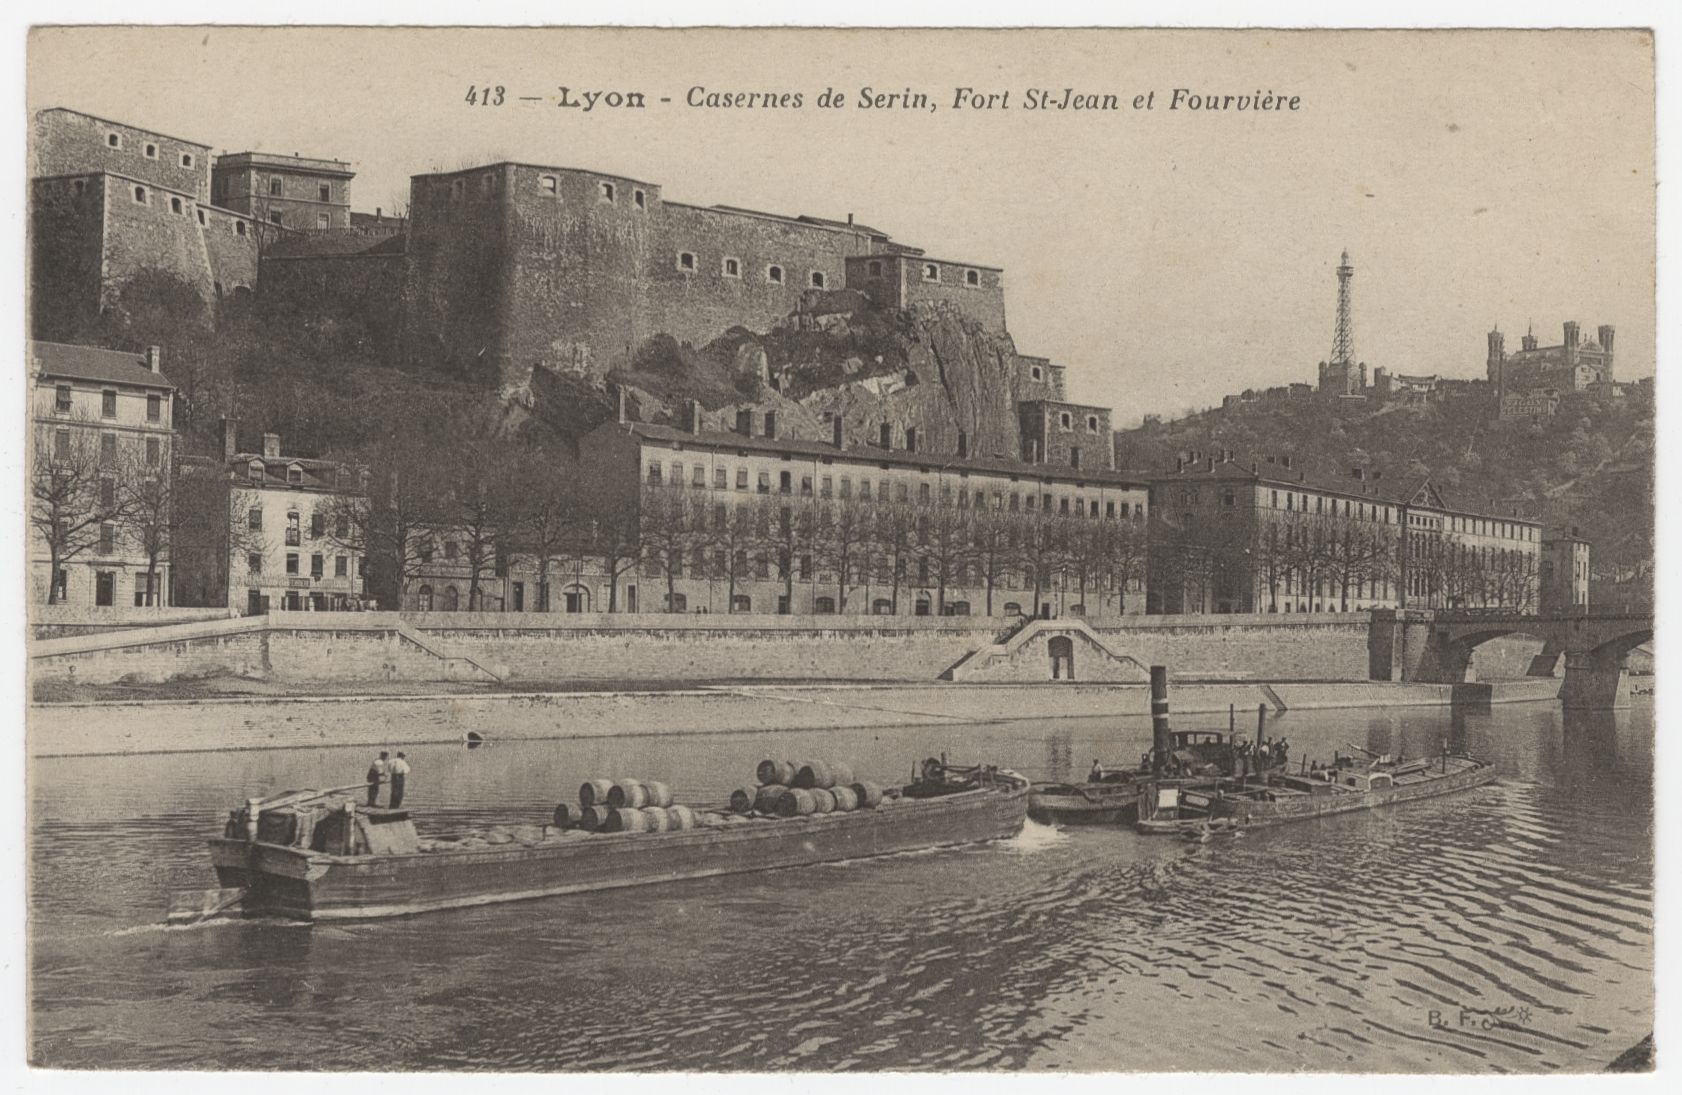 Caserne de Serin, fort Saint-Jean et Fourvière : carte postale (vers 1910, cote : 4FI/3360)